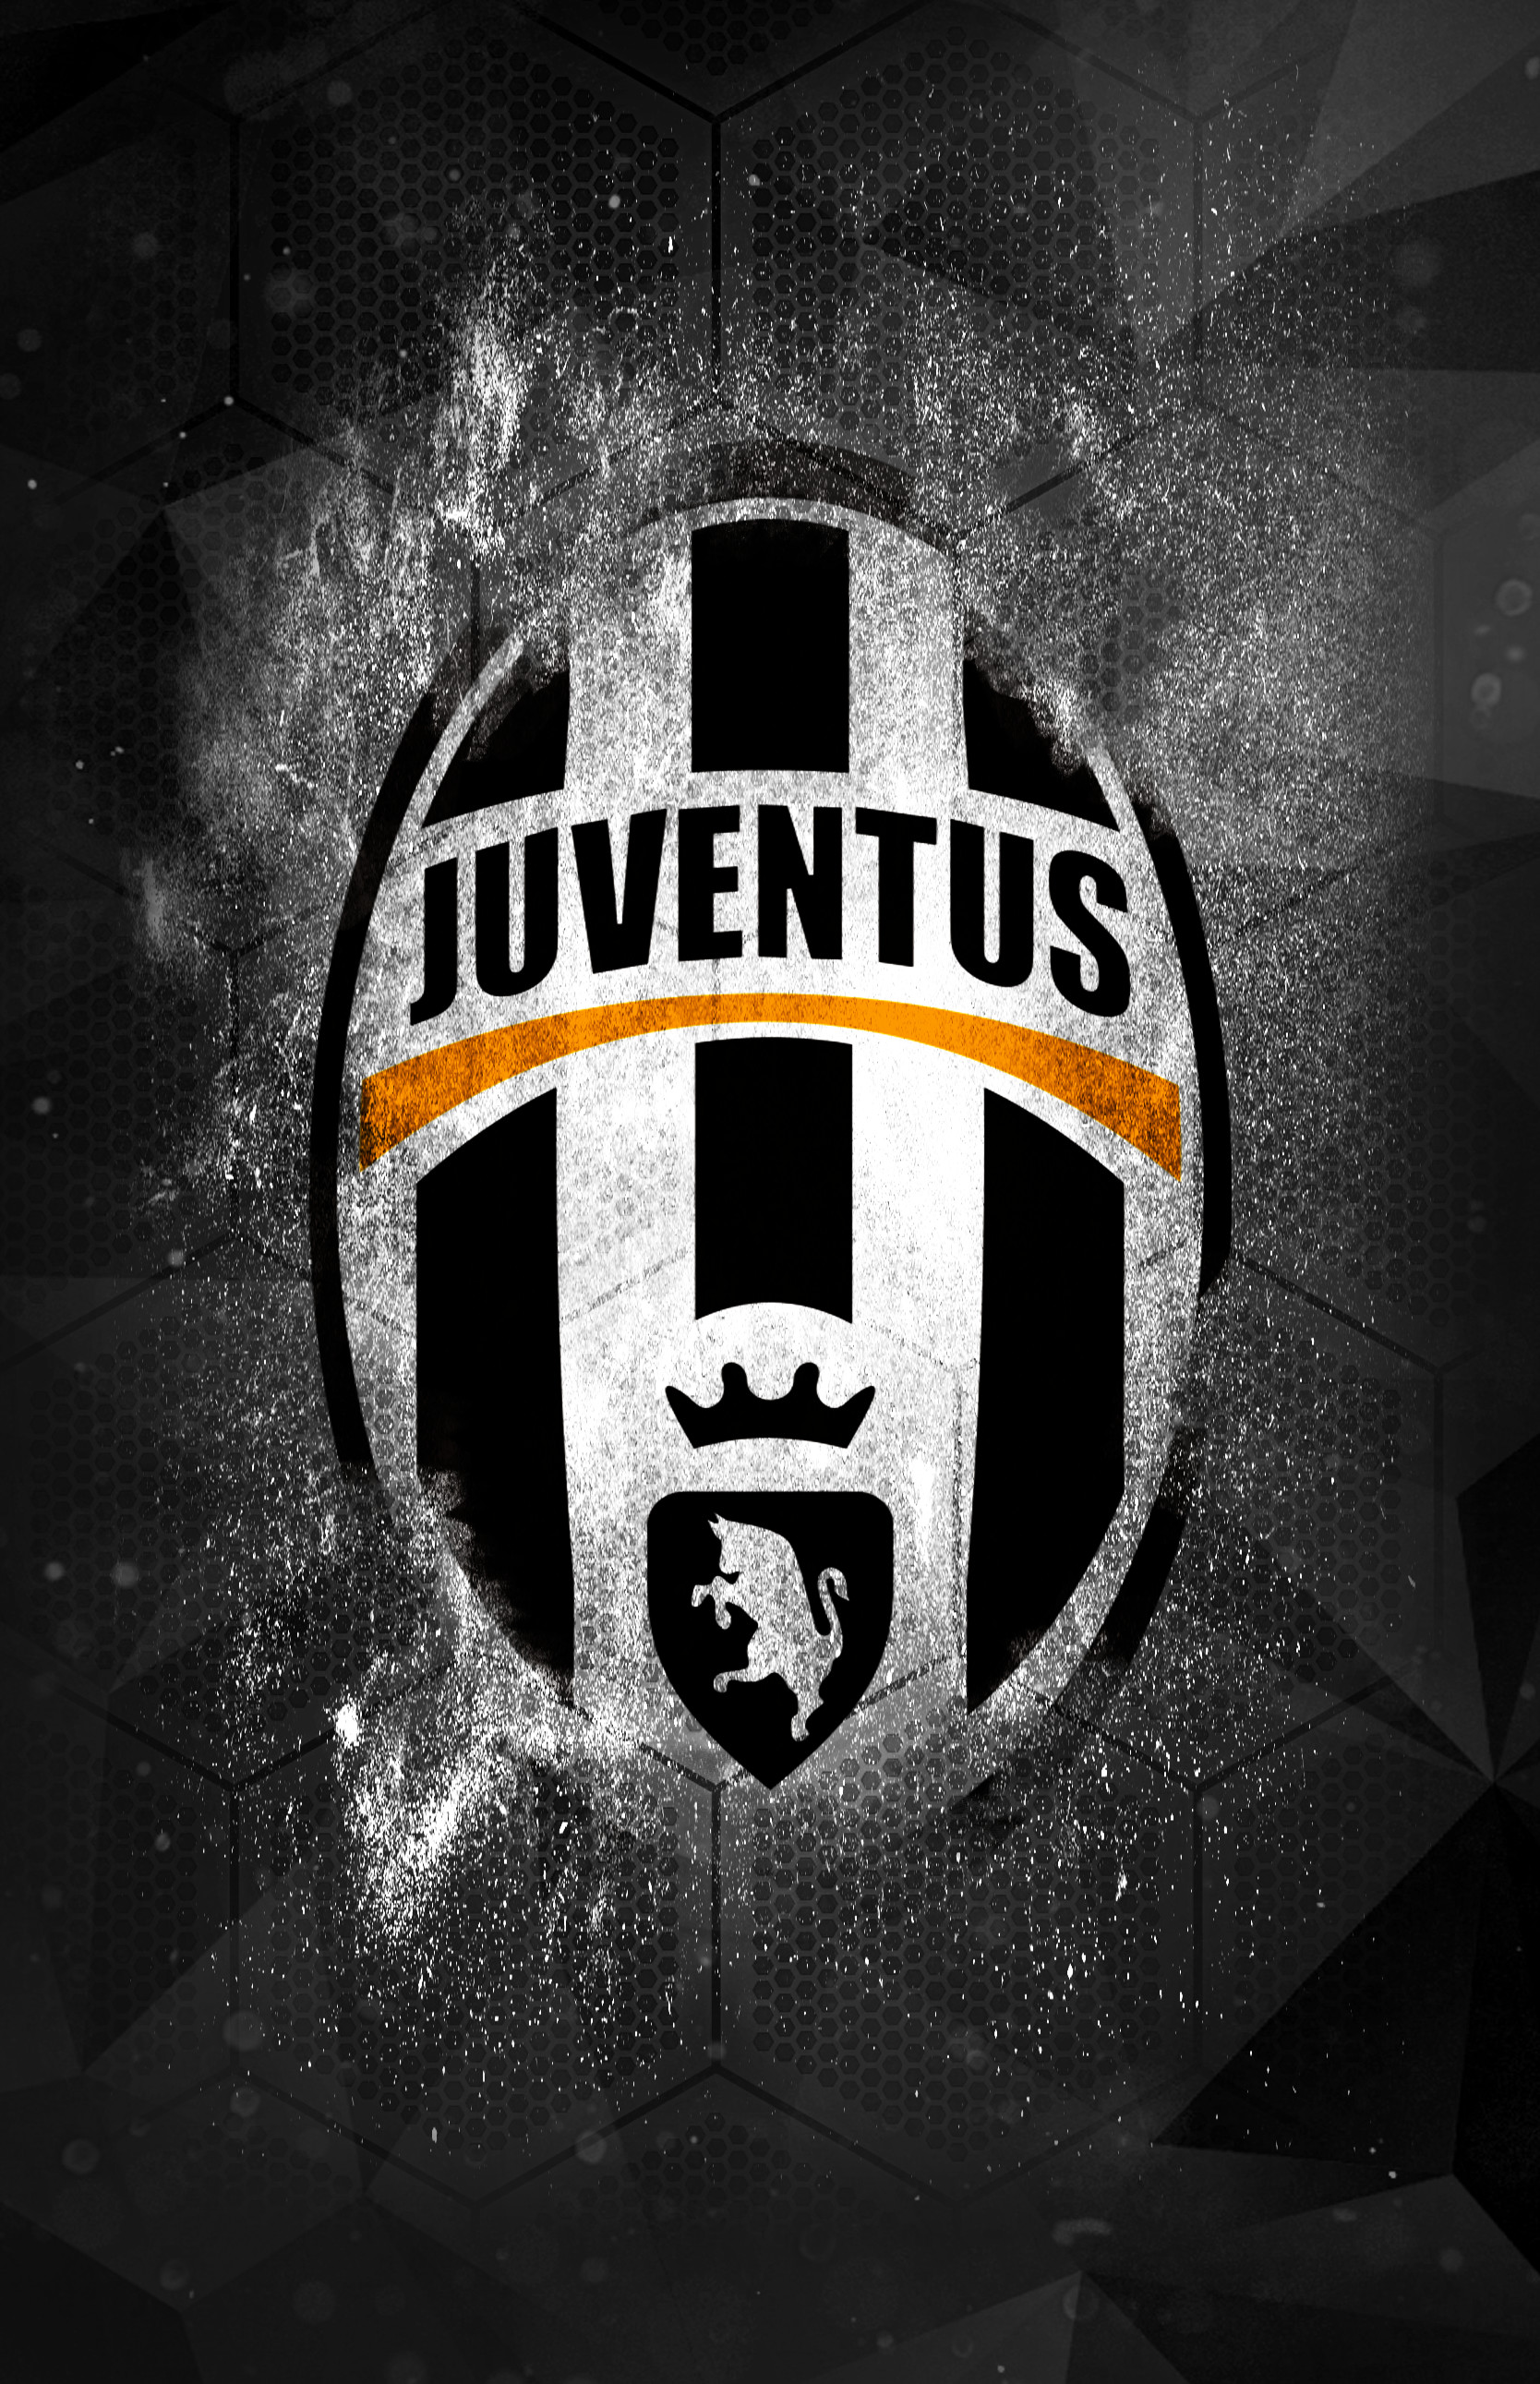 Juventus Images - Ronaldo Juventus Wallpapers - Wallpaper Cave - We